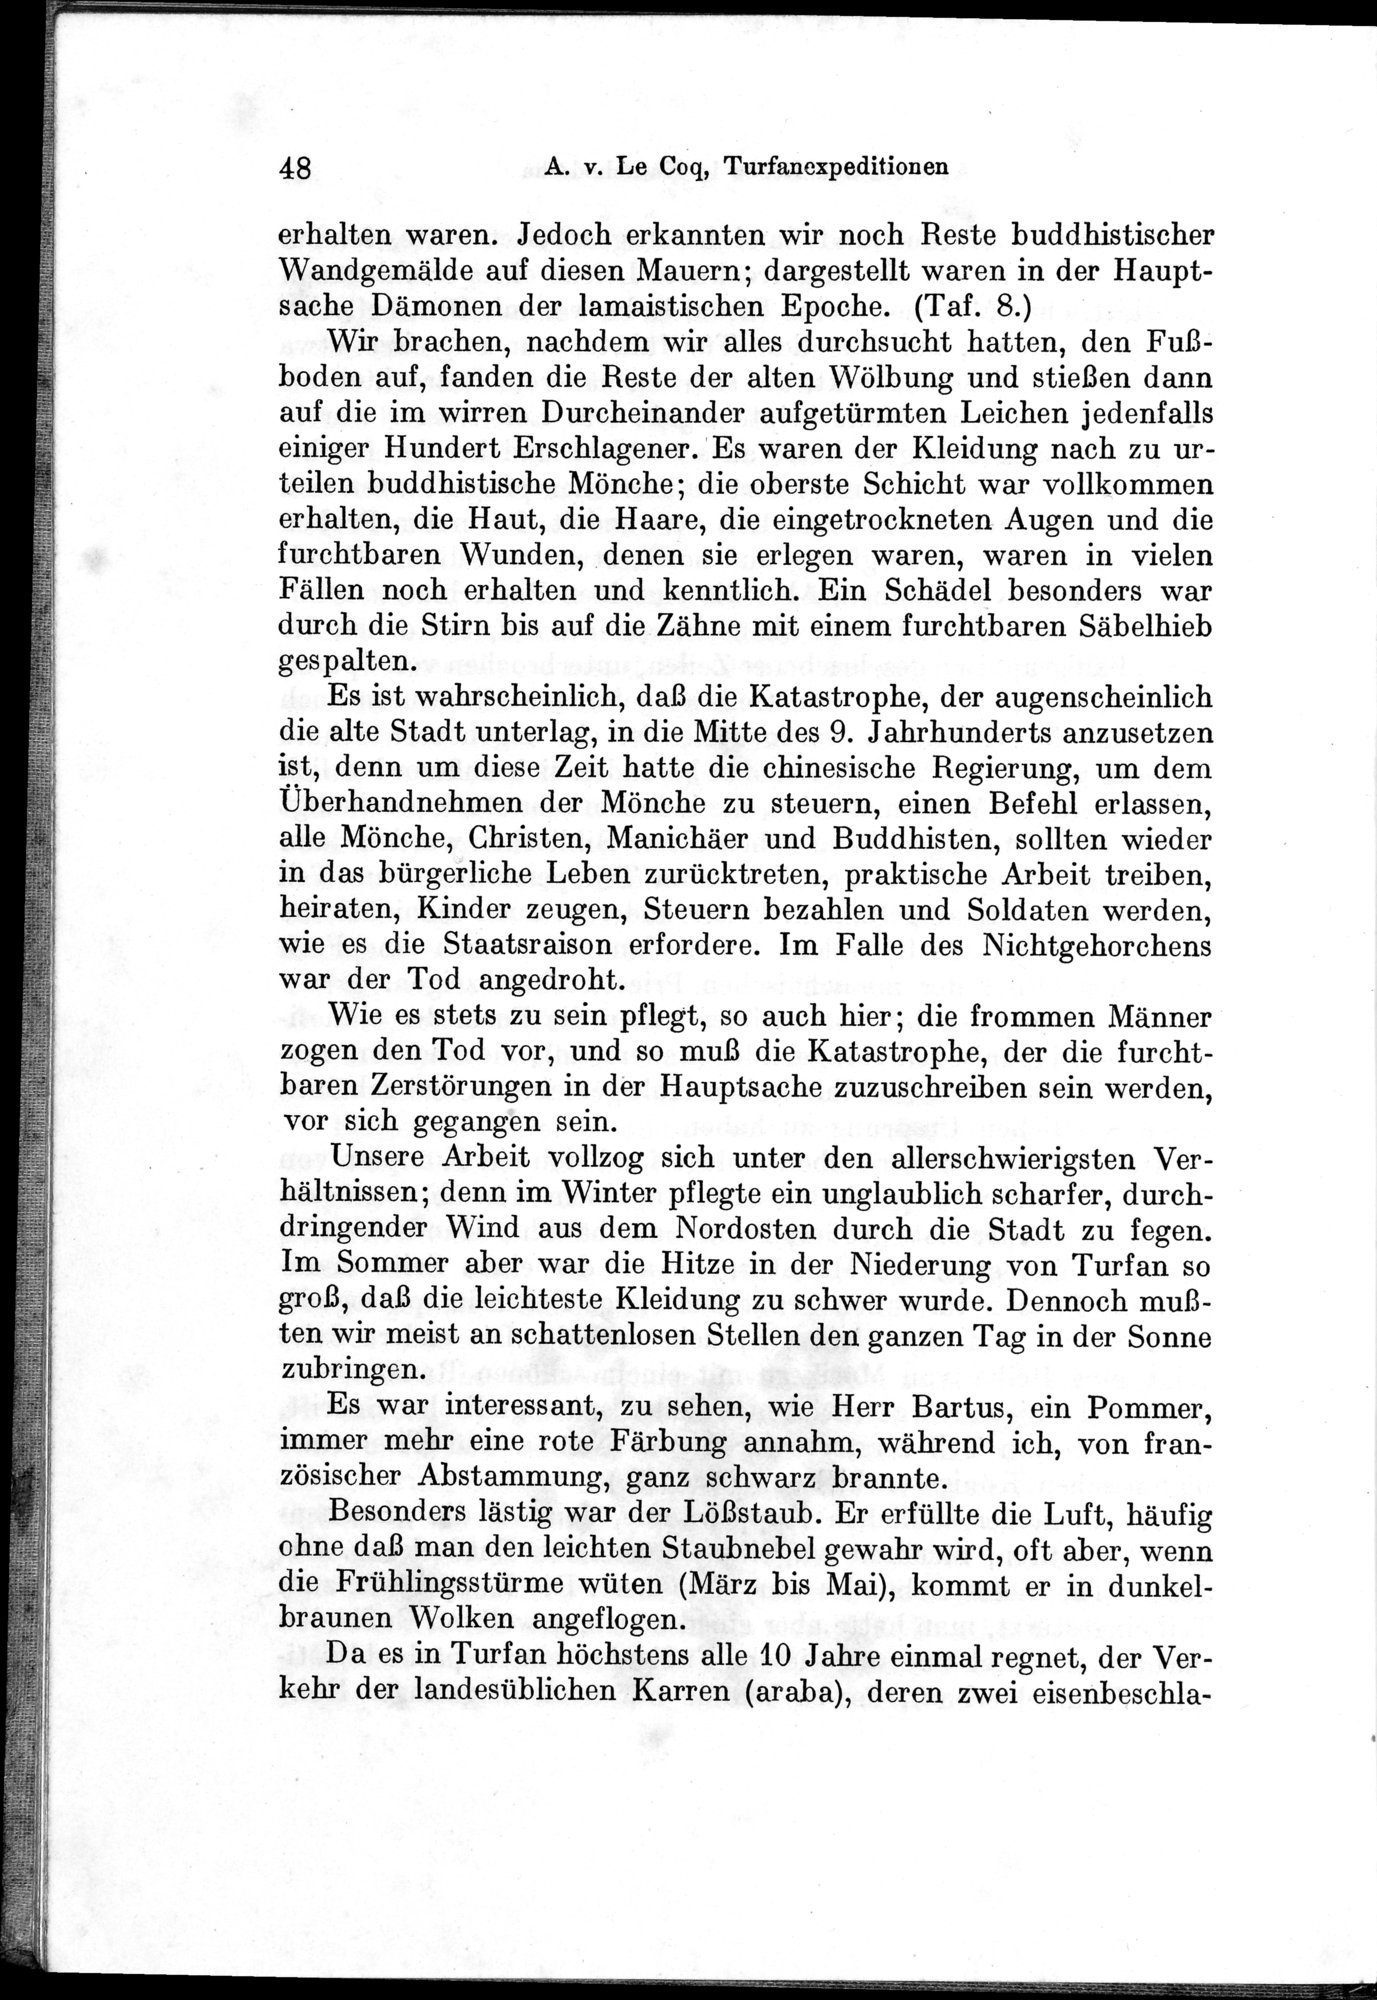 Auf Hellas Spuren in Ostturkistan : vol.1 / Page 74 (Grayscale High Resolution Image)